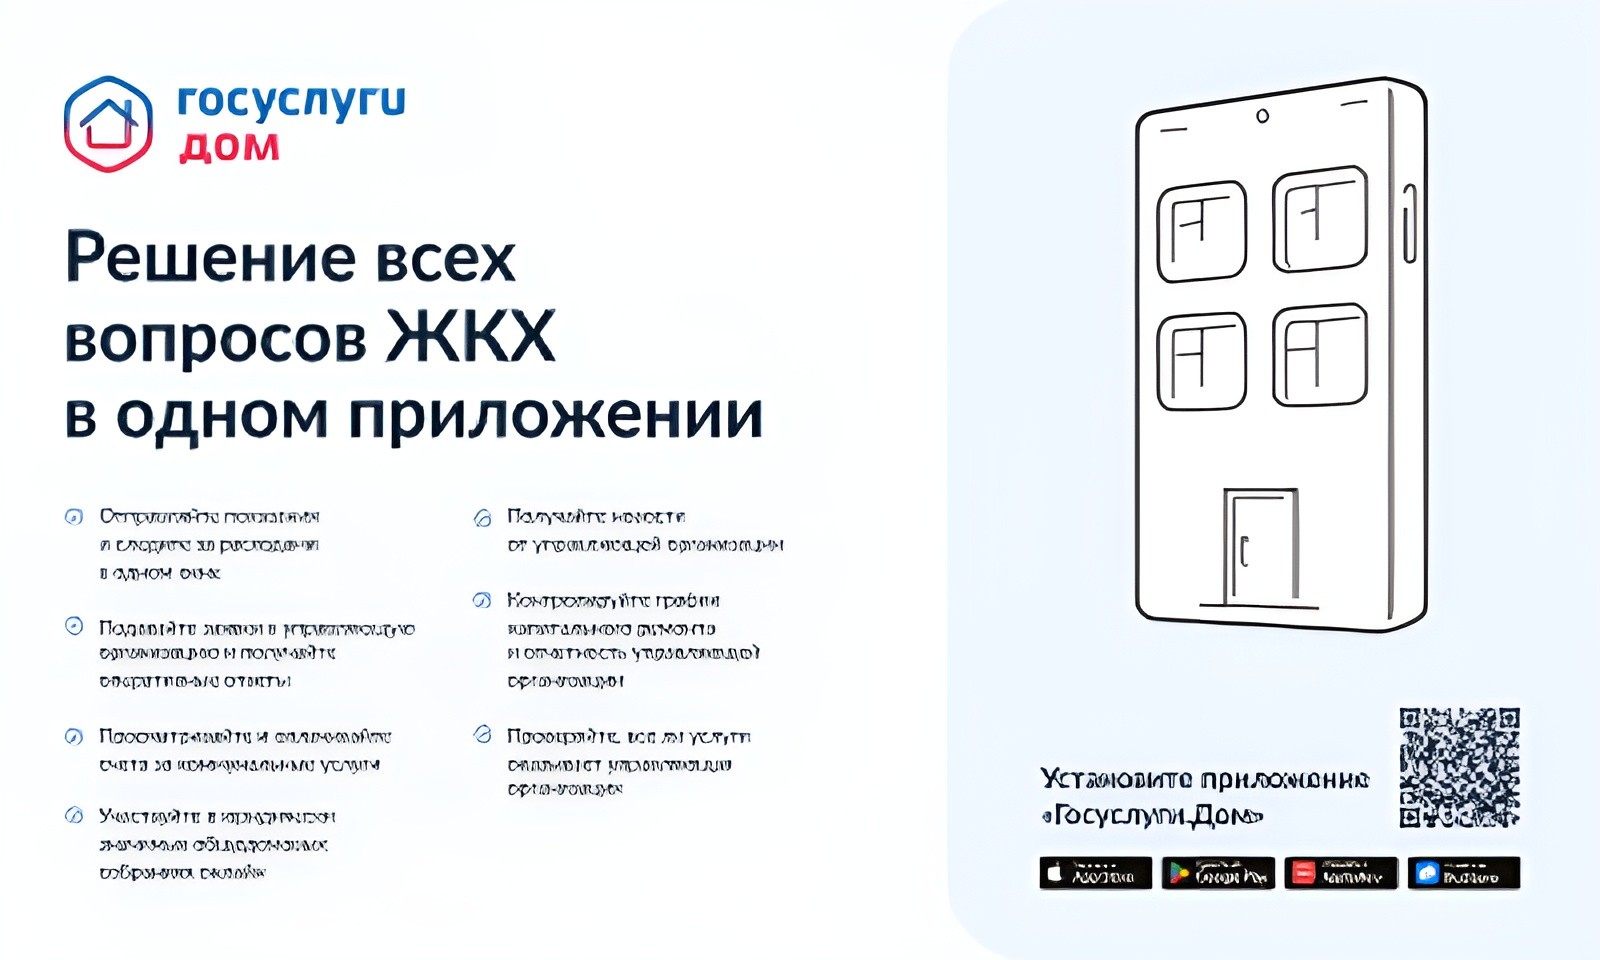 Новое мобильное приложение ГИС ЖКХ «Госуслуги.Дом». Вопросы и ответы..